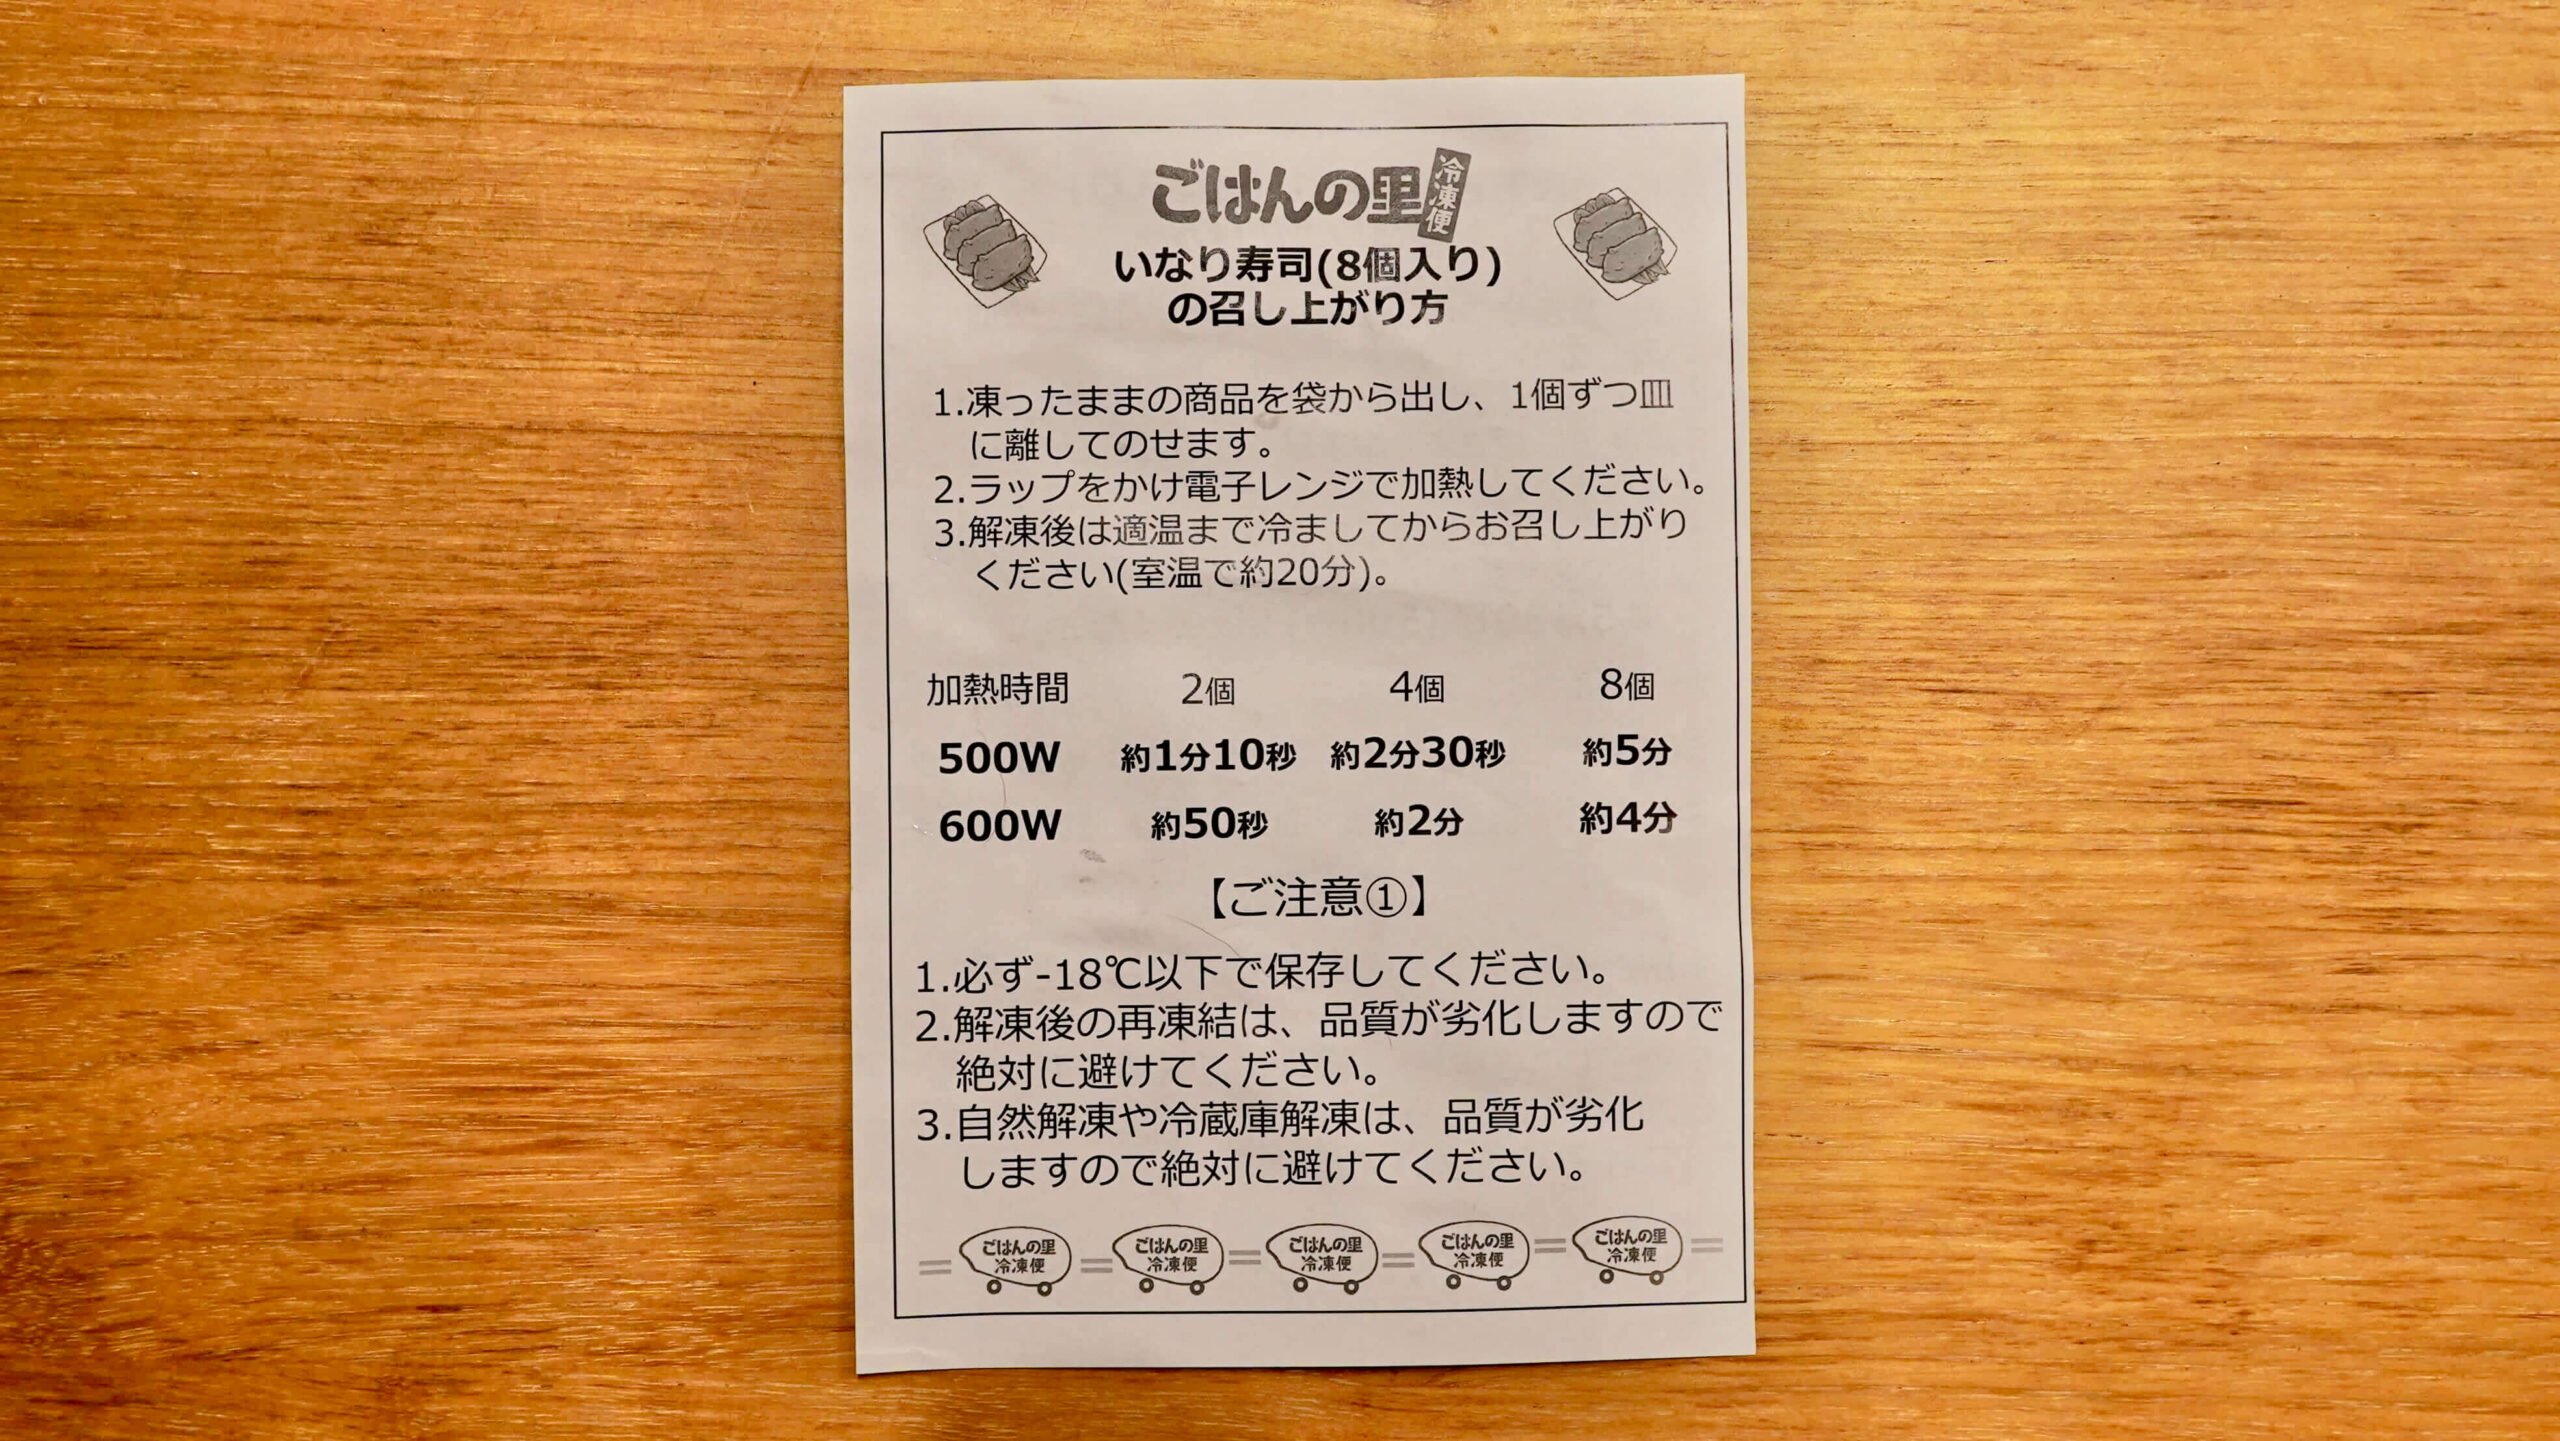 「ごはんの里」の冷凍食品「五目いなり寿司」の説明書の写真